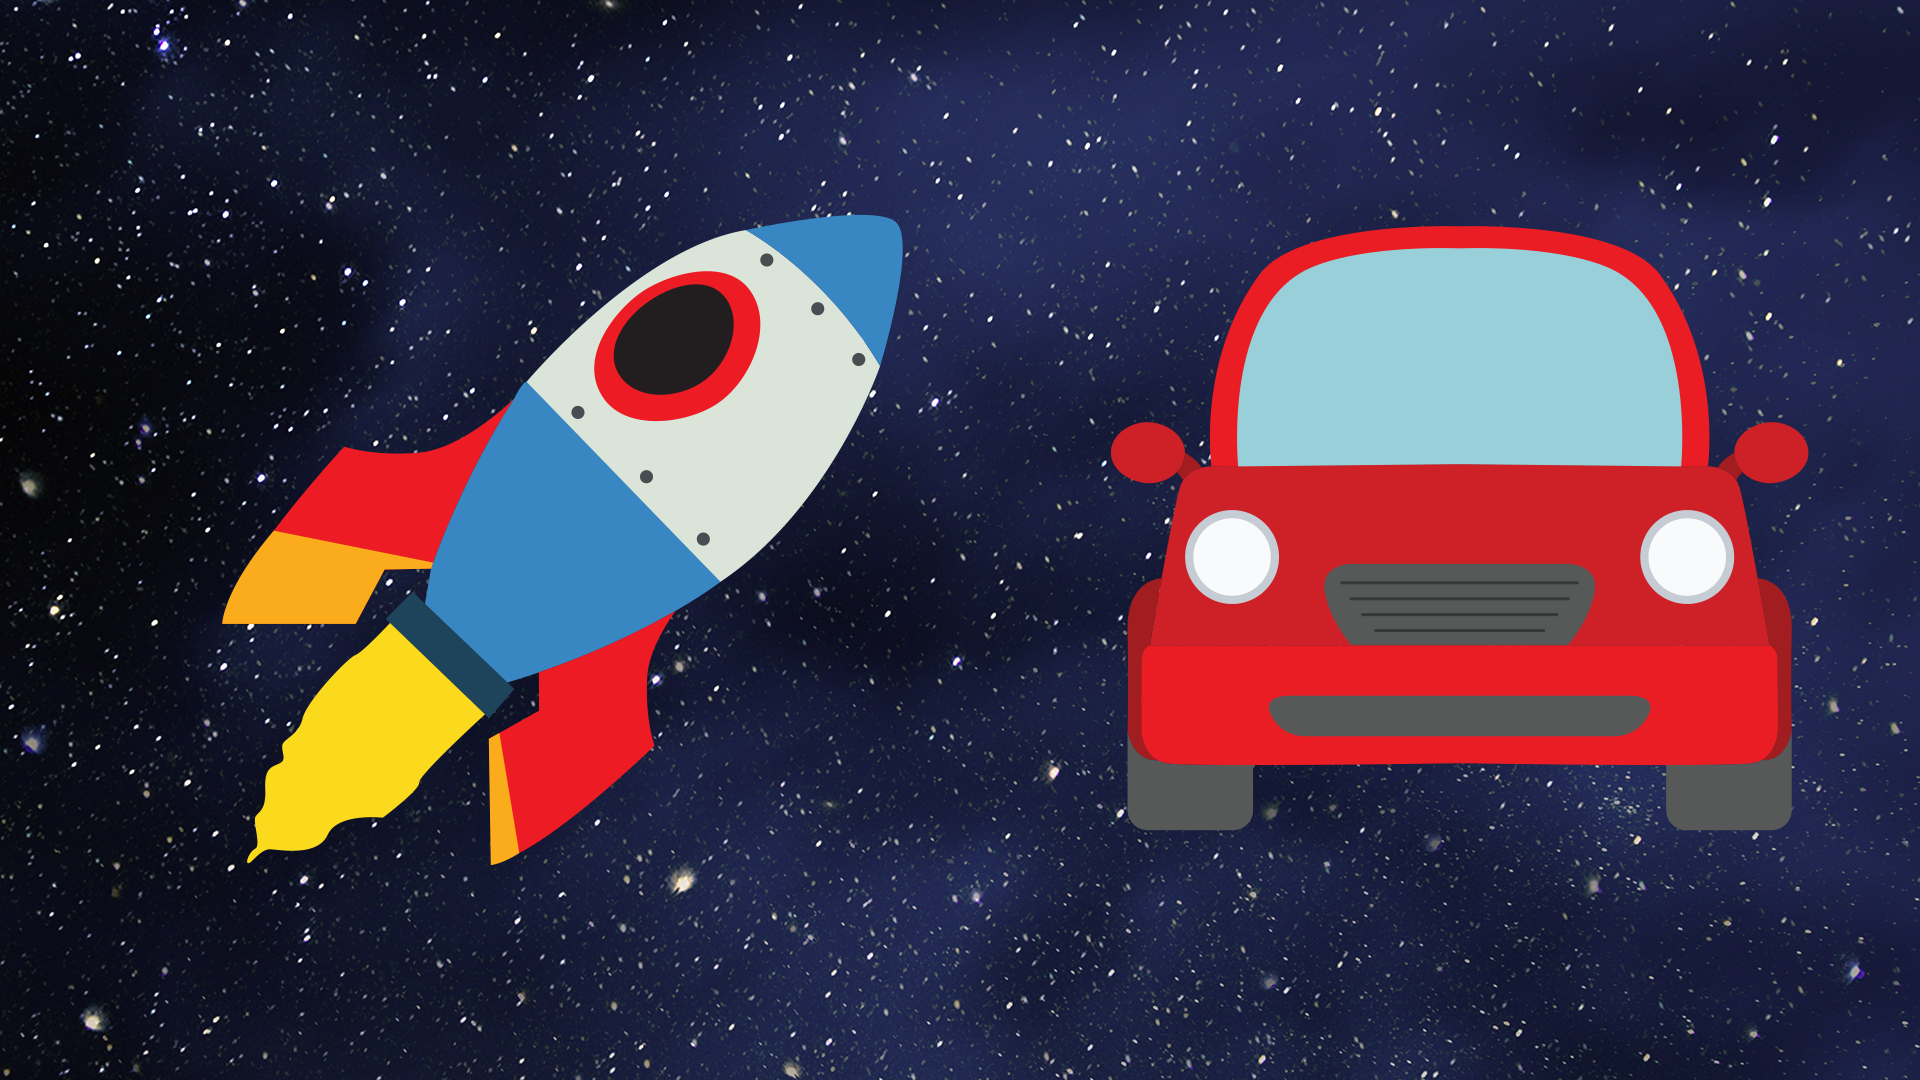 A rocket and a car emoji